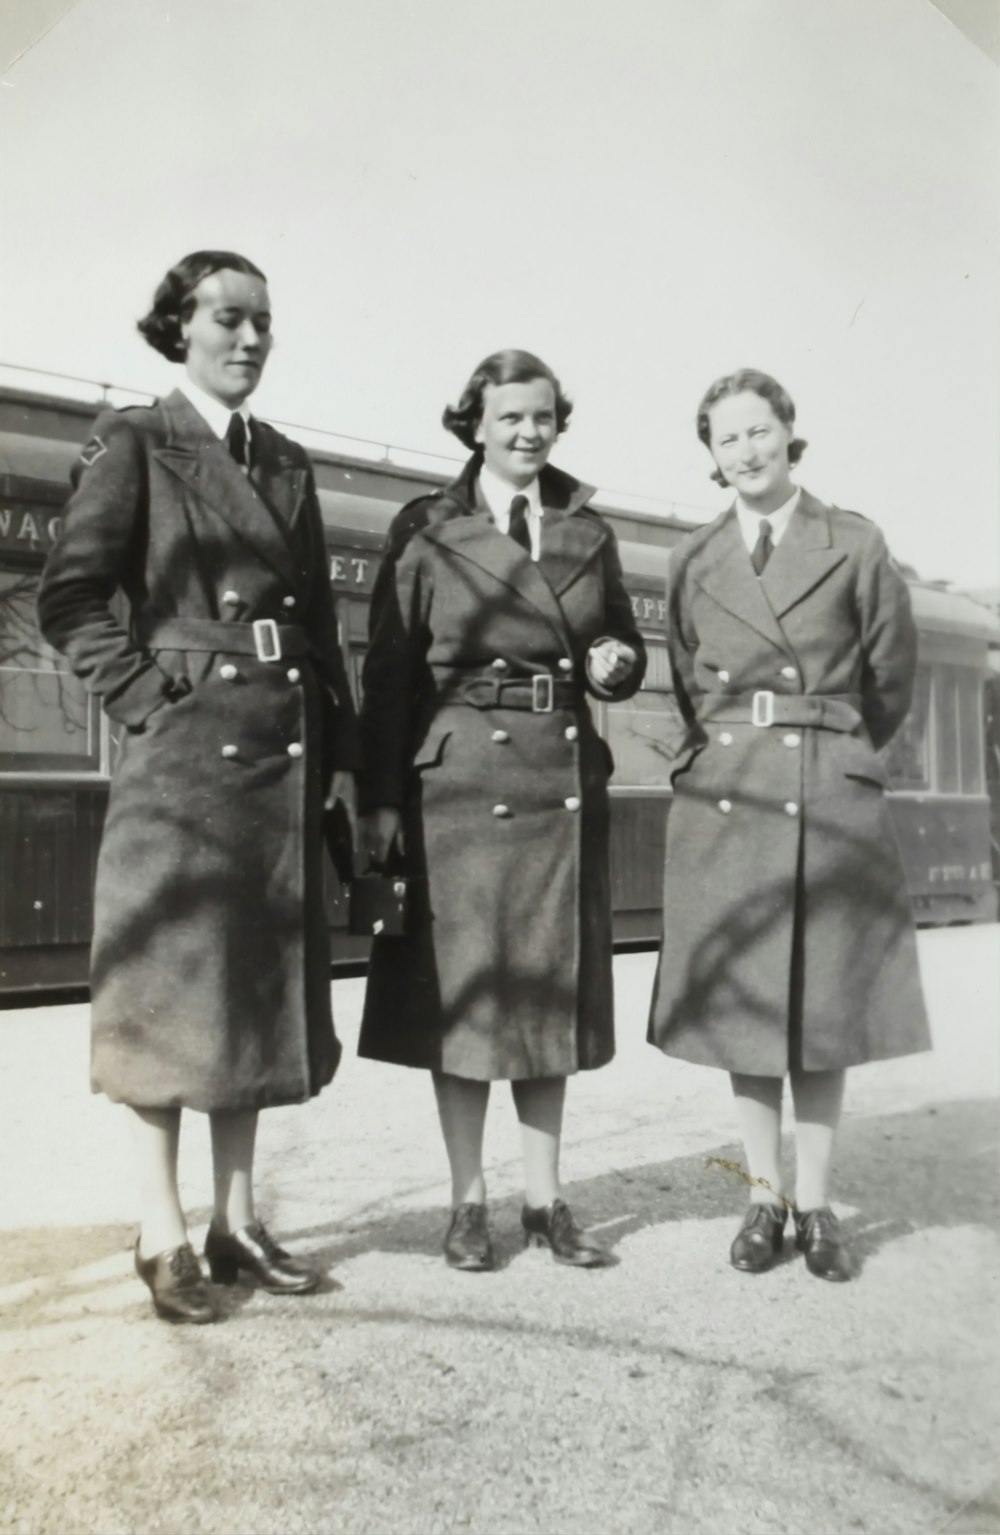 Photo en niveaux de gris de trois femmes en manteaux